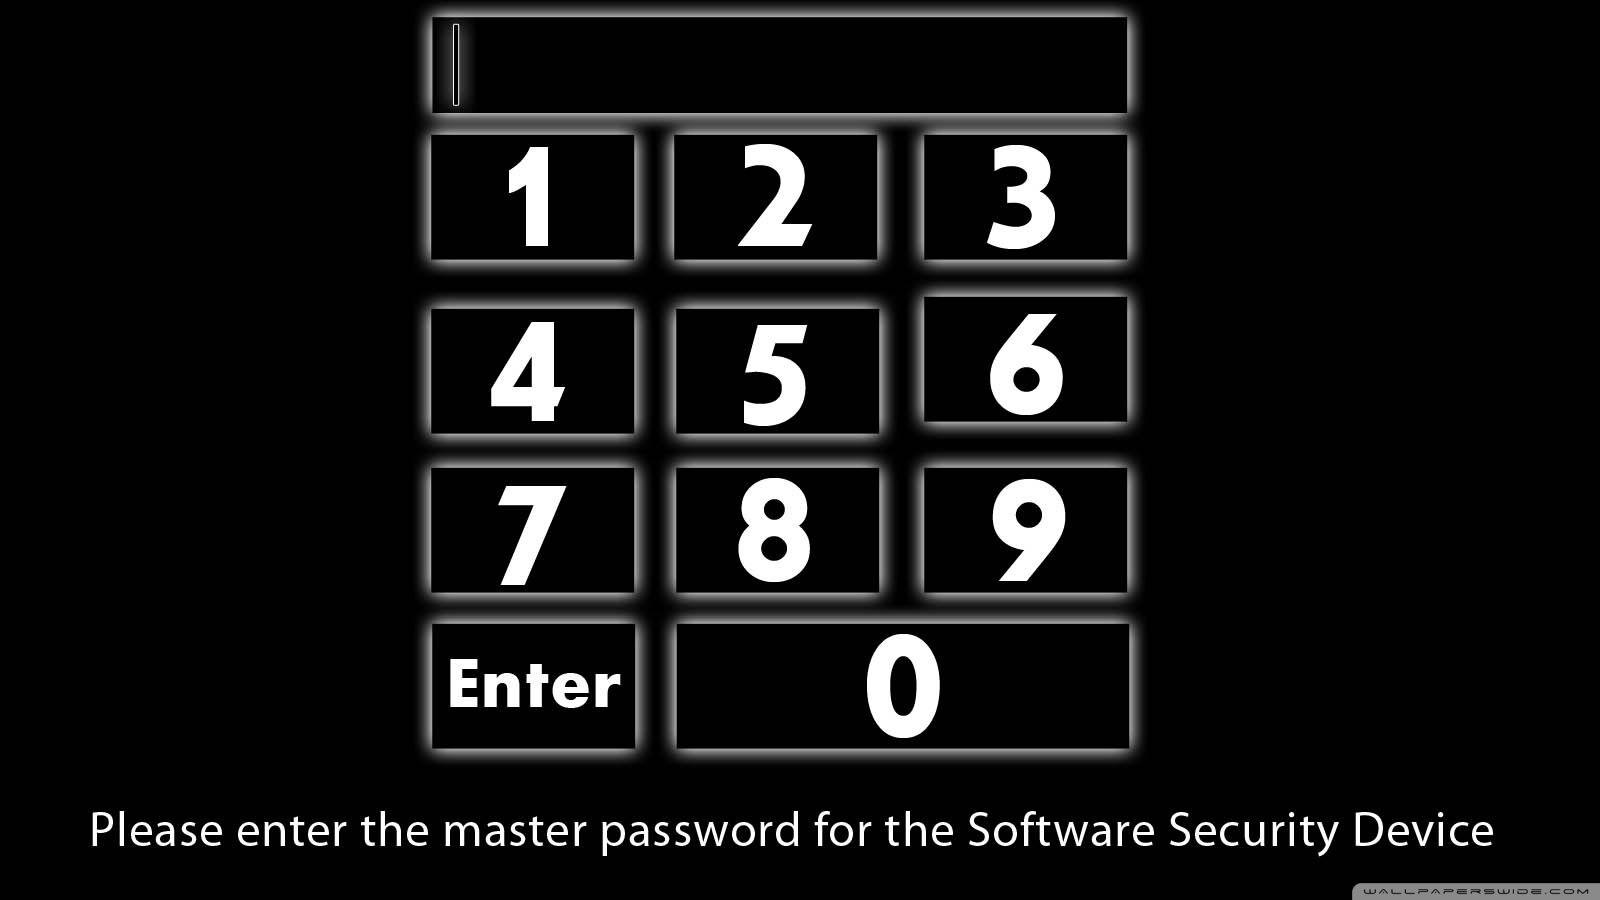 900 игра ответы. Обои password. Обои с паролем. Пароль enter password. Enter password обои.